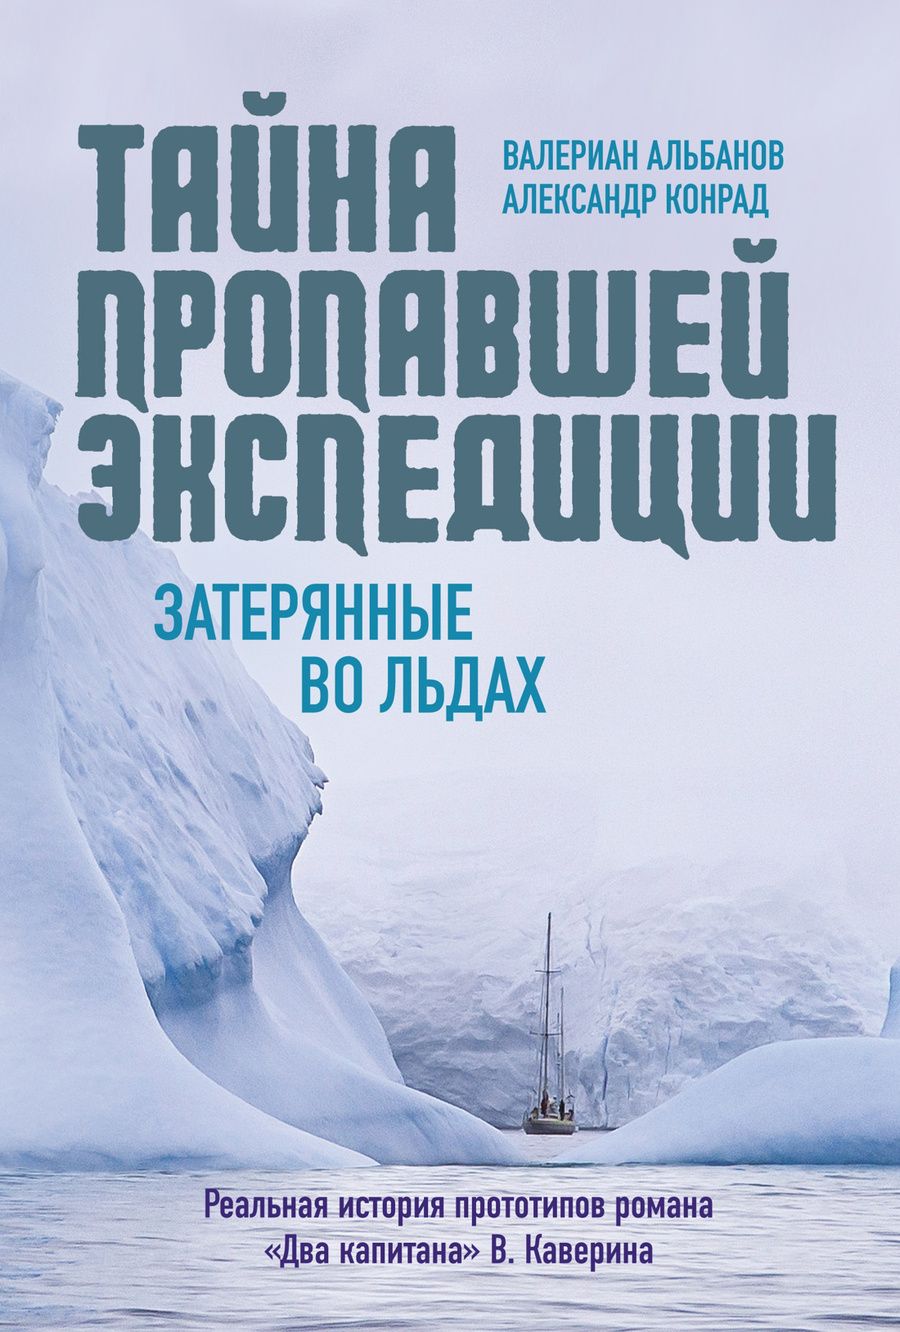 Обложка книги "Альбанов: Тайна пропавшей экспедиции: затерянные во льдах"